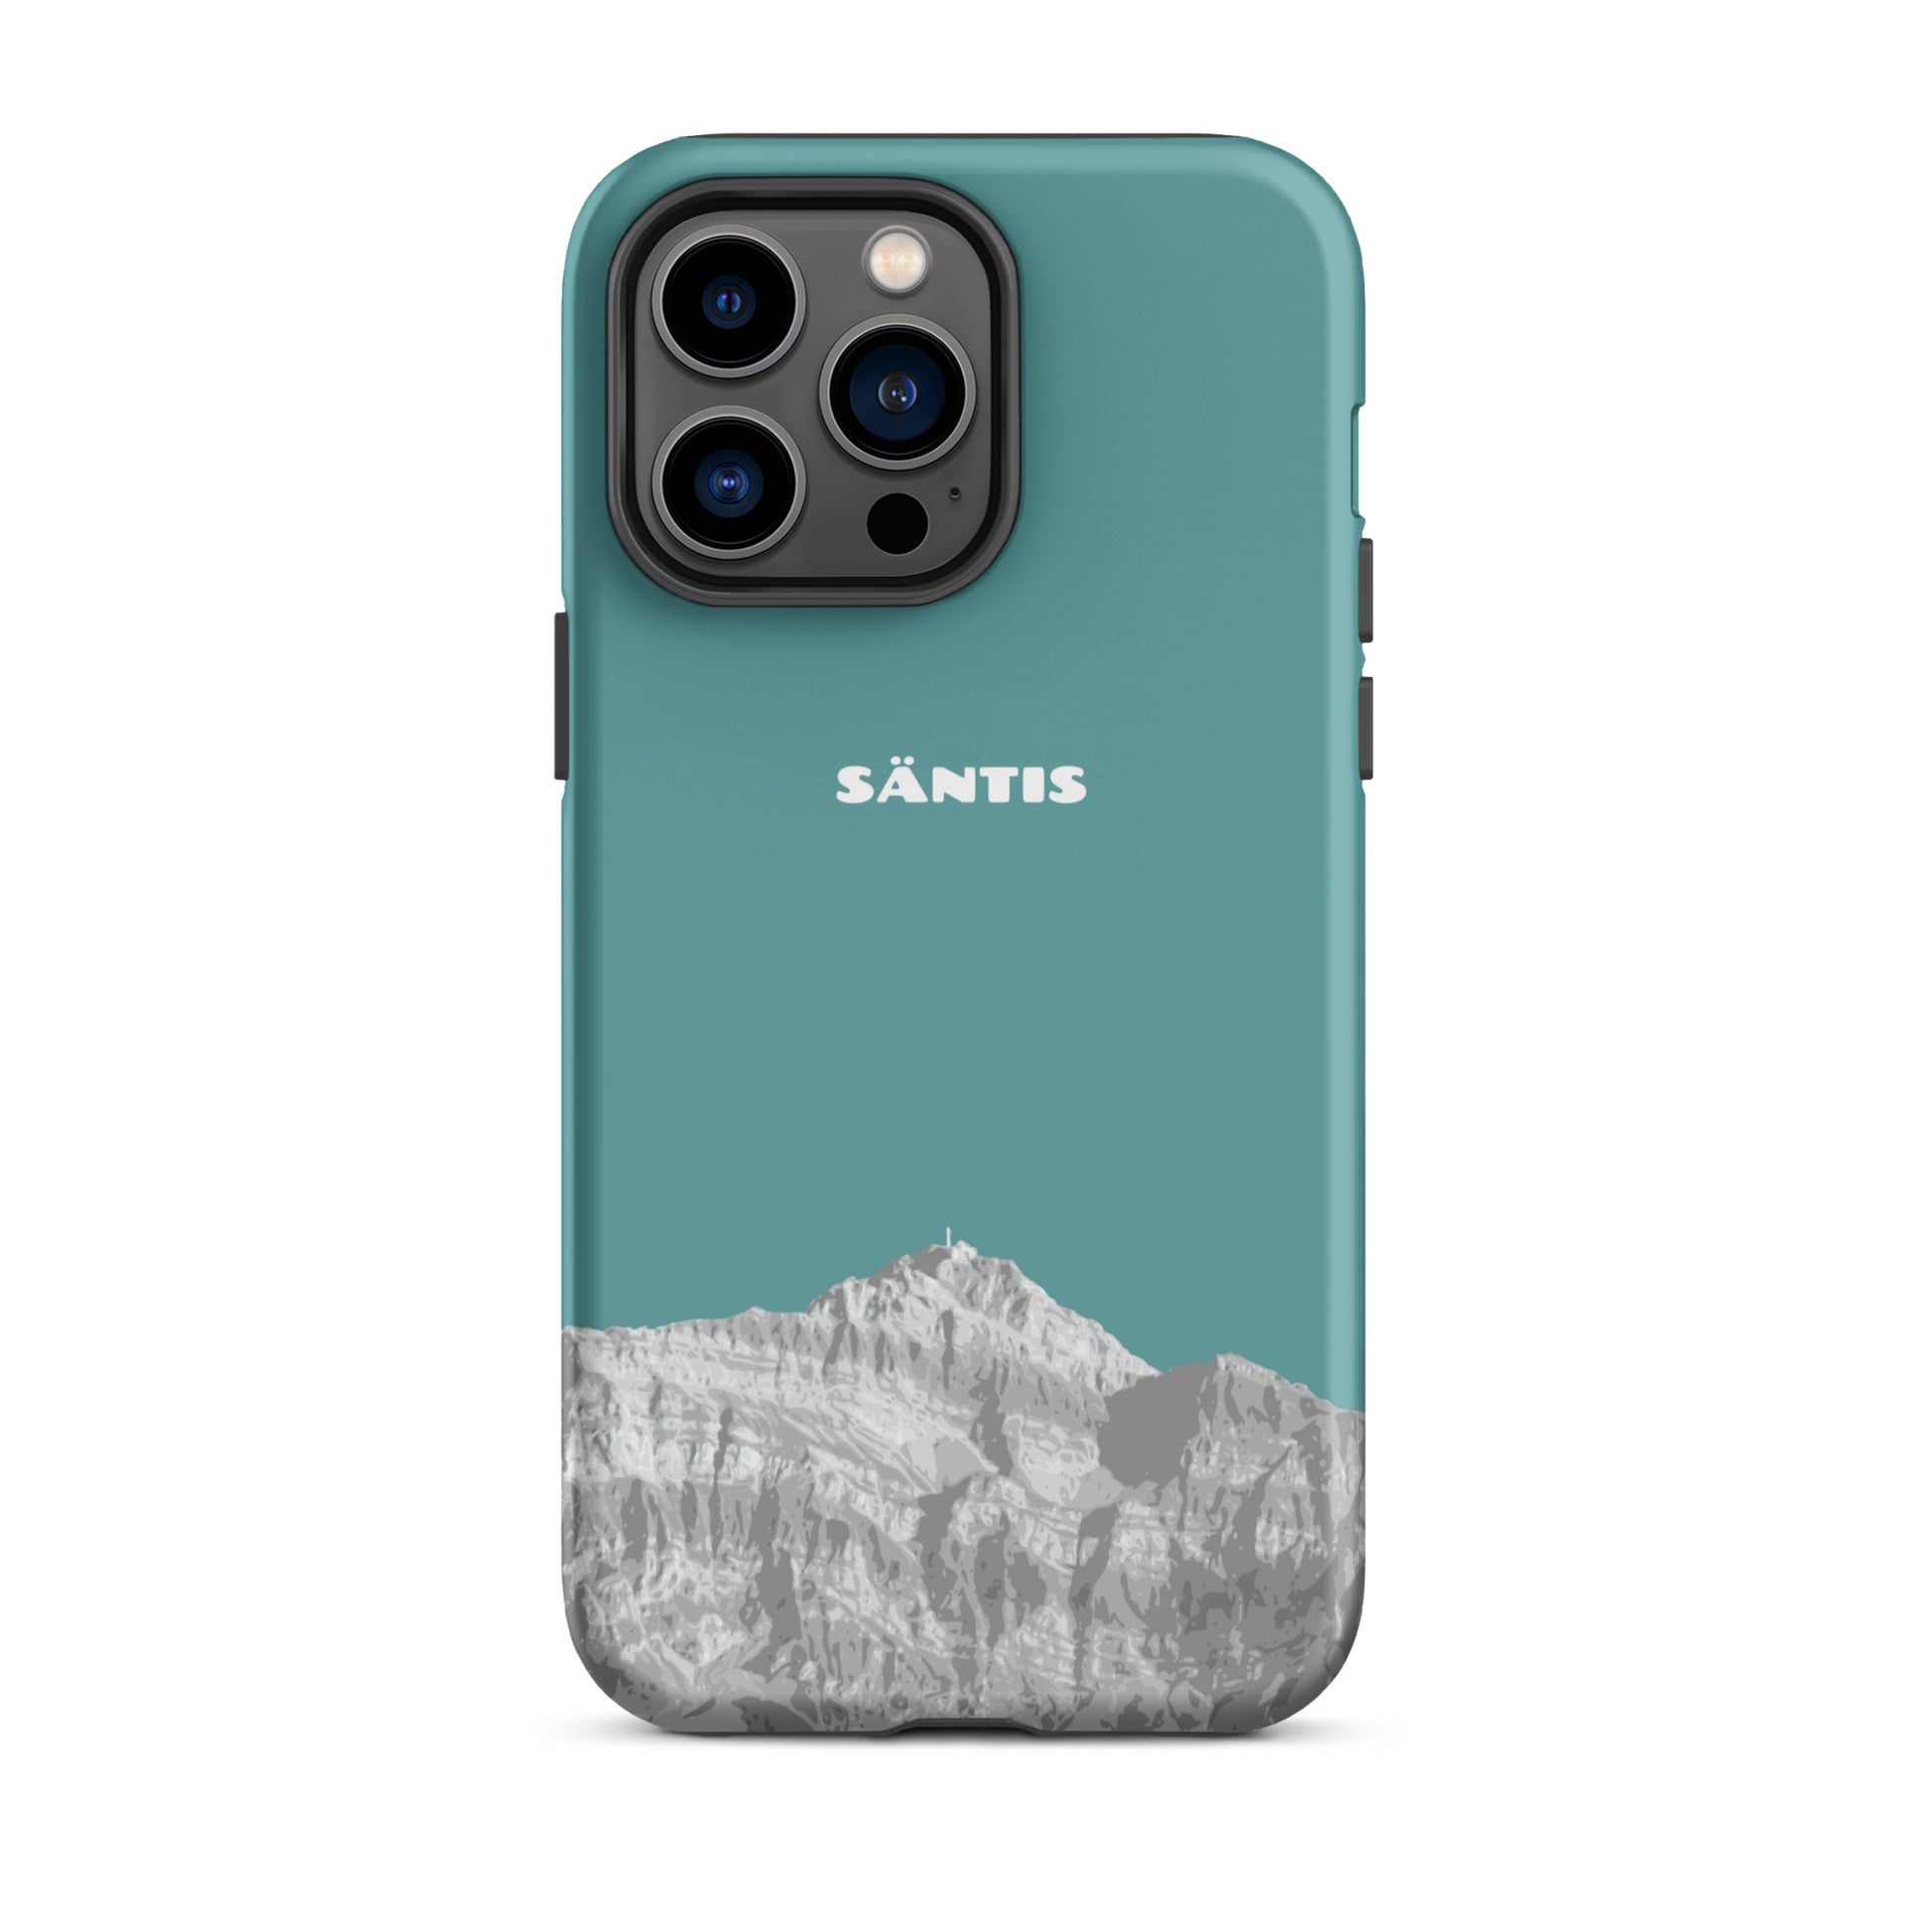 Hülle für das iPhone 14 Pro Max von Apple in der Farbe Kadettenblau, dass den Säntis im Alpstein zeigt.